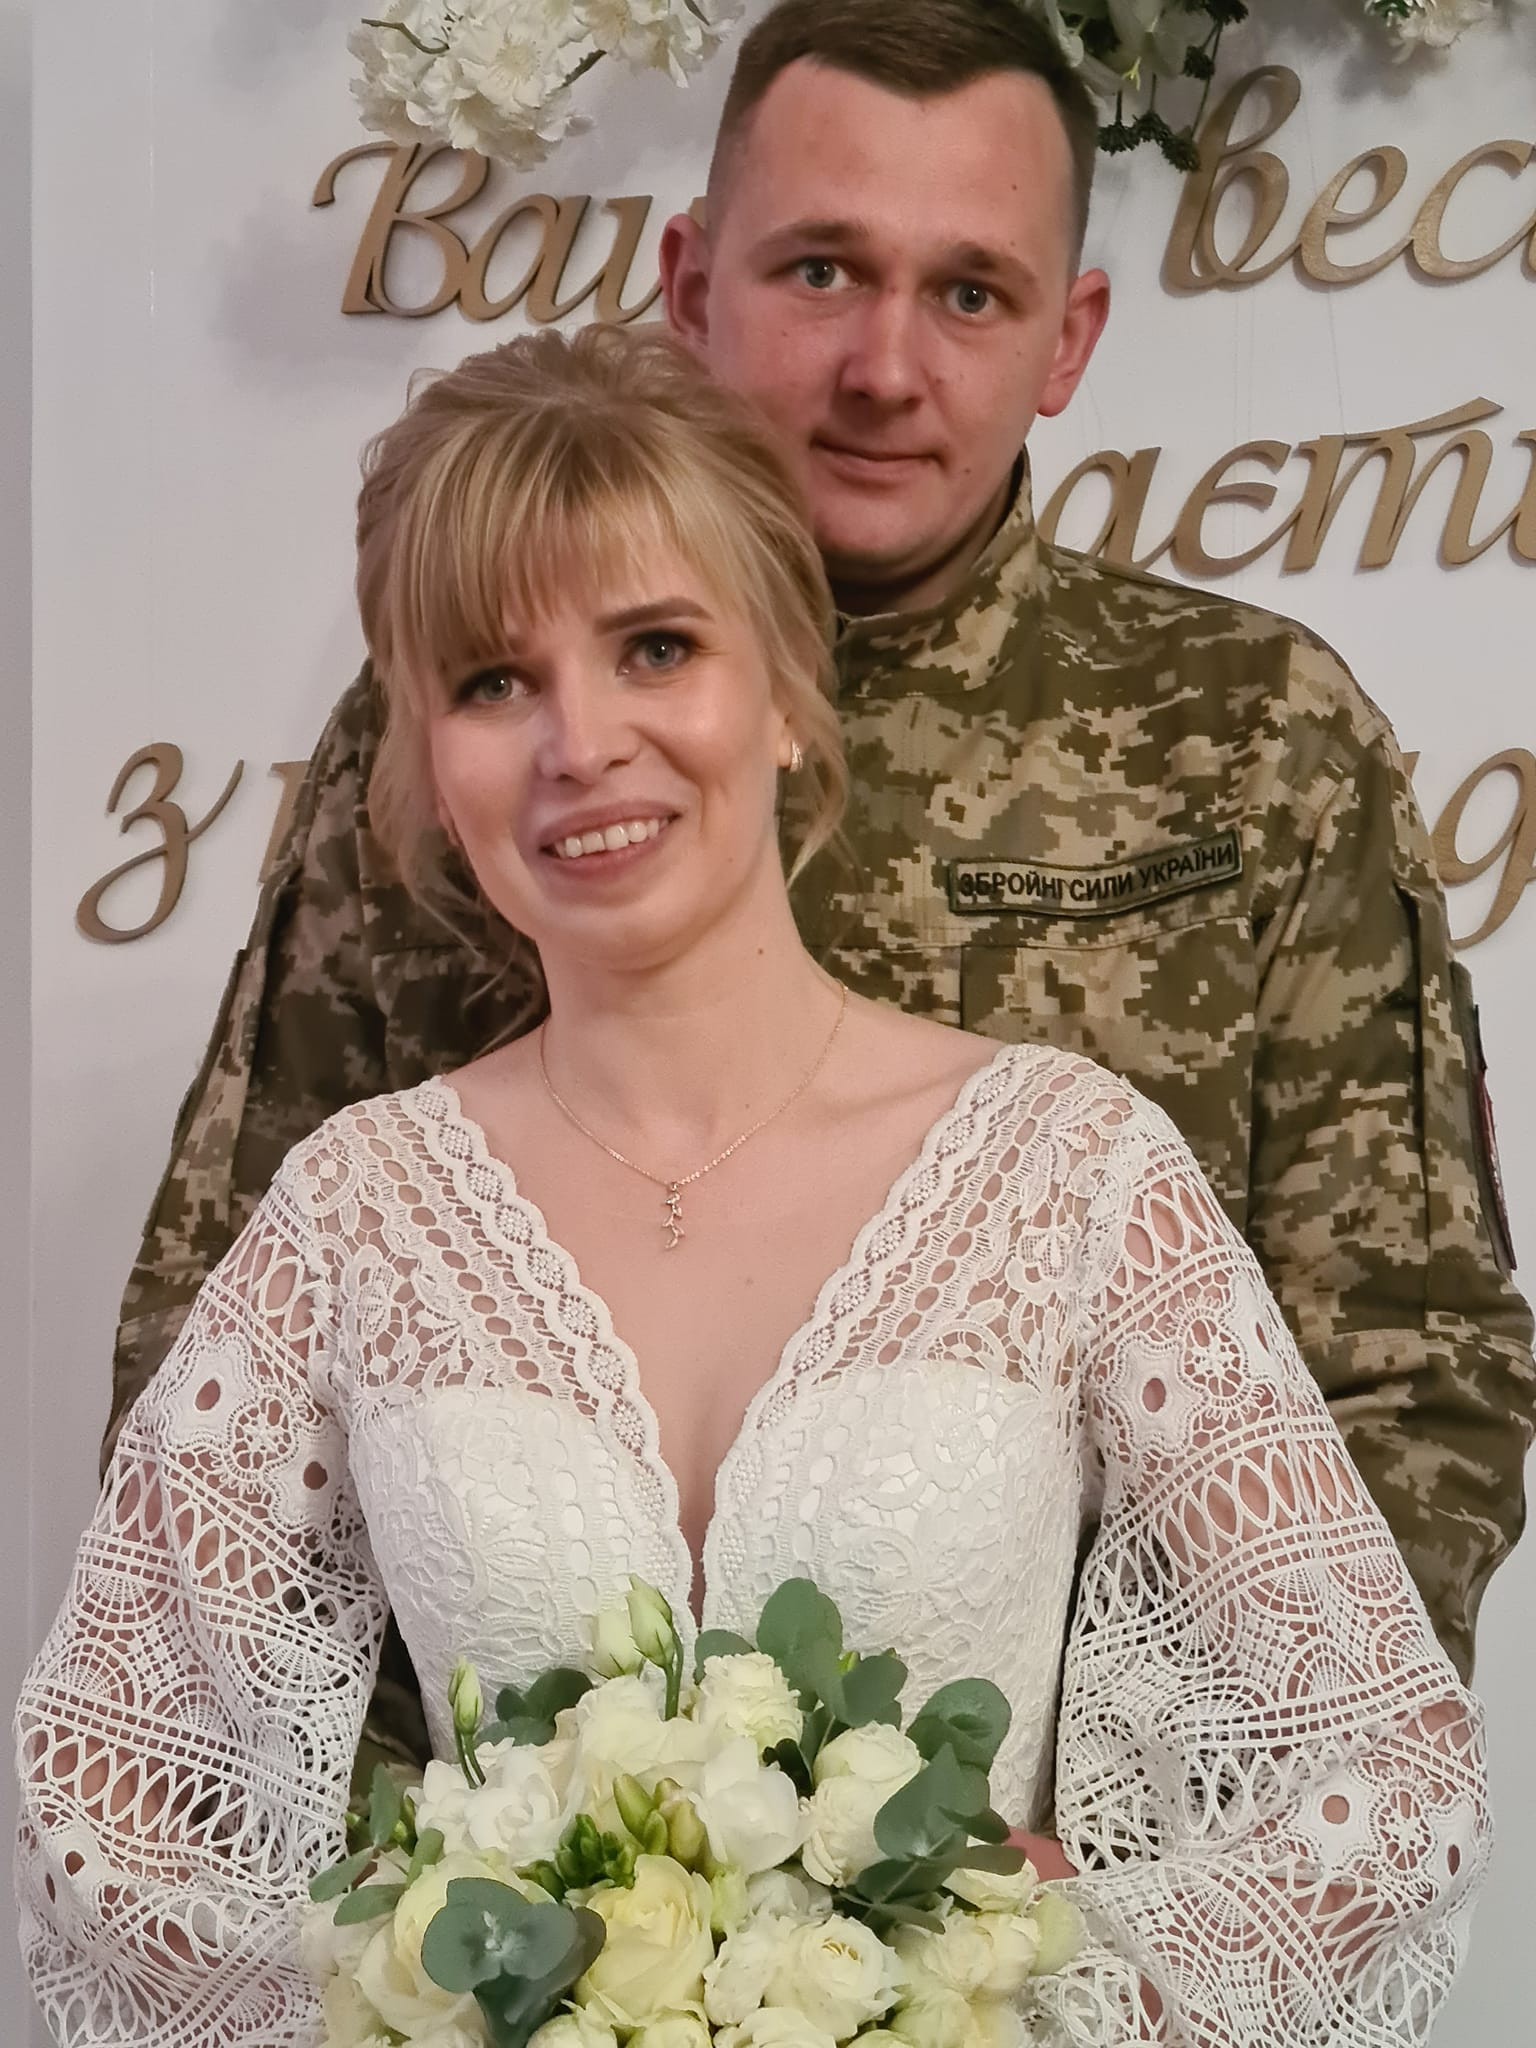 Кохання та війна: в Україні продовжується весільний бум - зображення